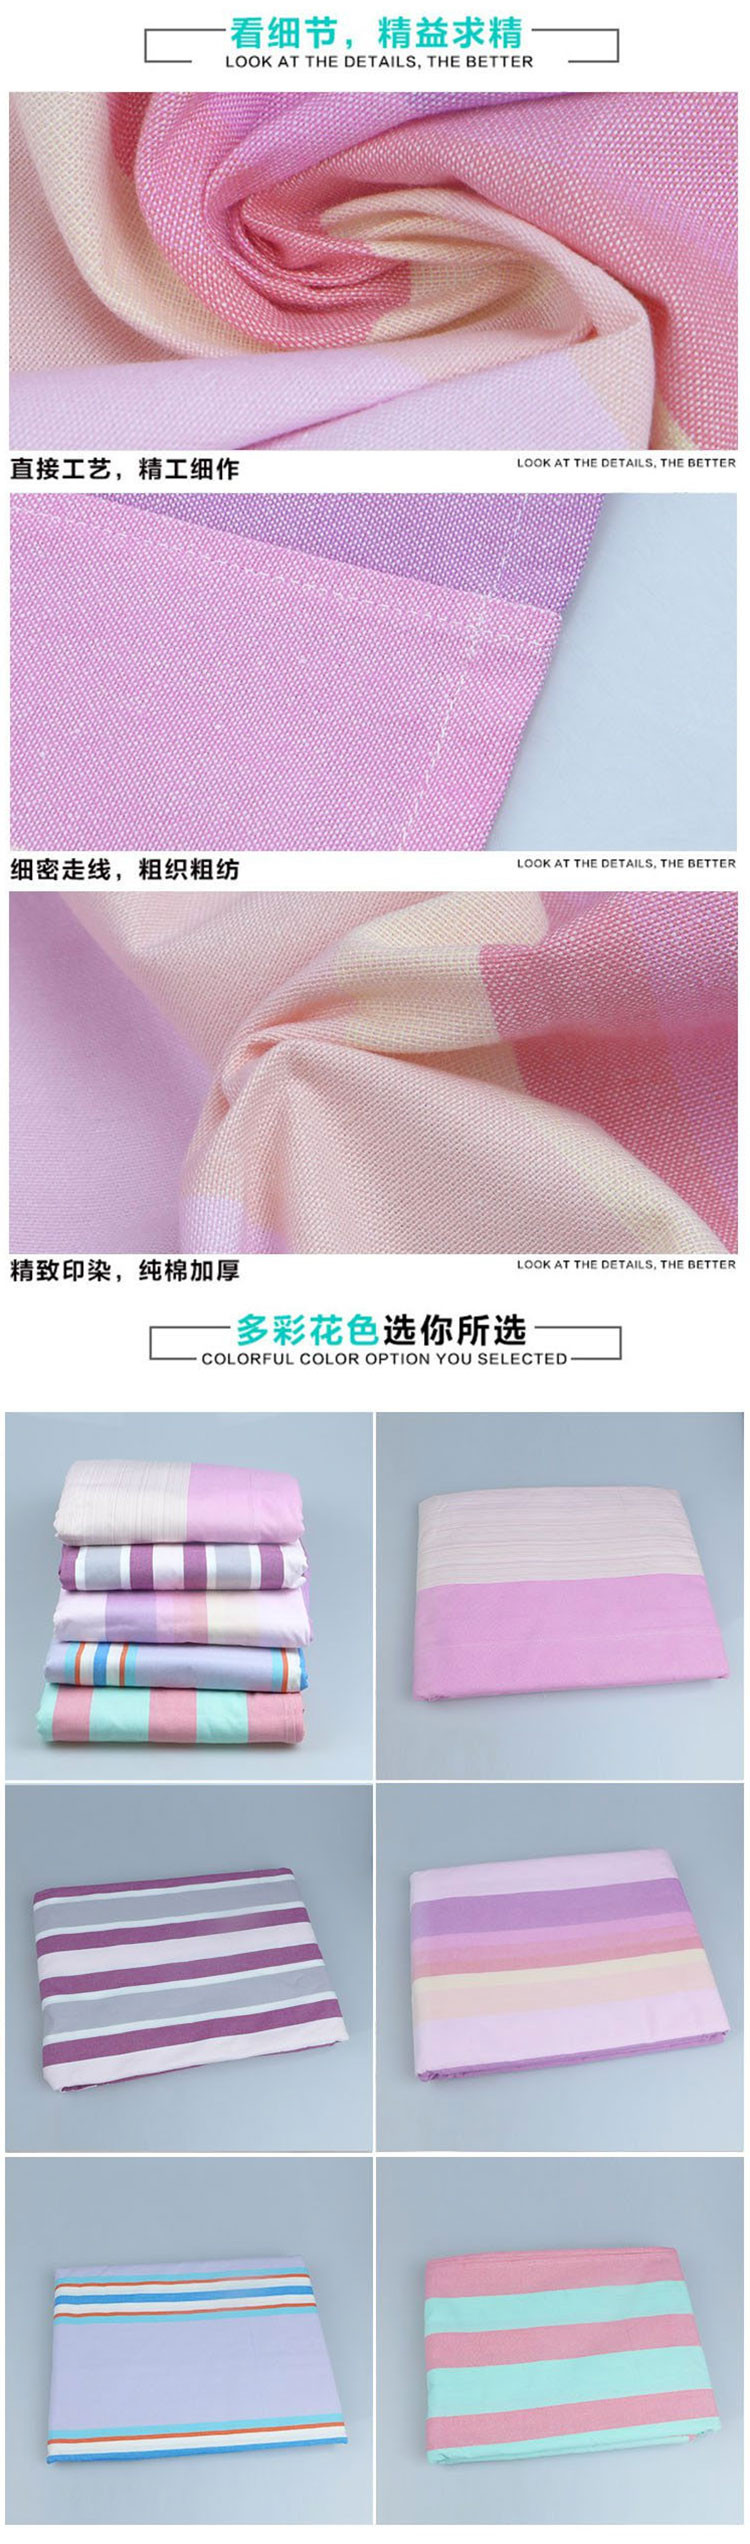 锦绣 加密加厚优质定然大三件粗布床单2.5米*2.5米信封式枕套一对 全棉老棉布手工双人床上用品家纺